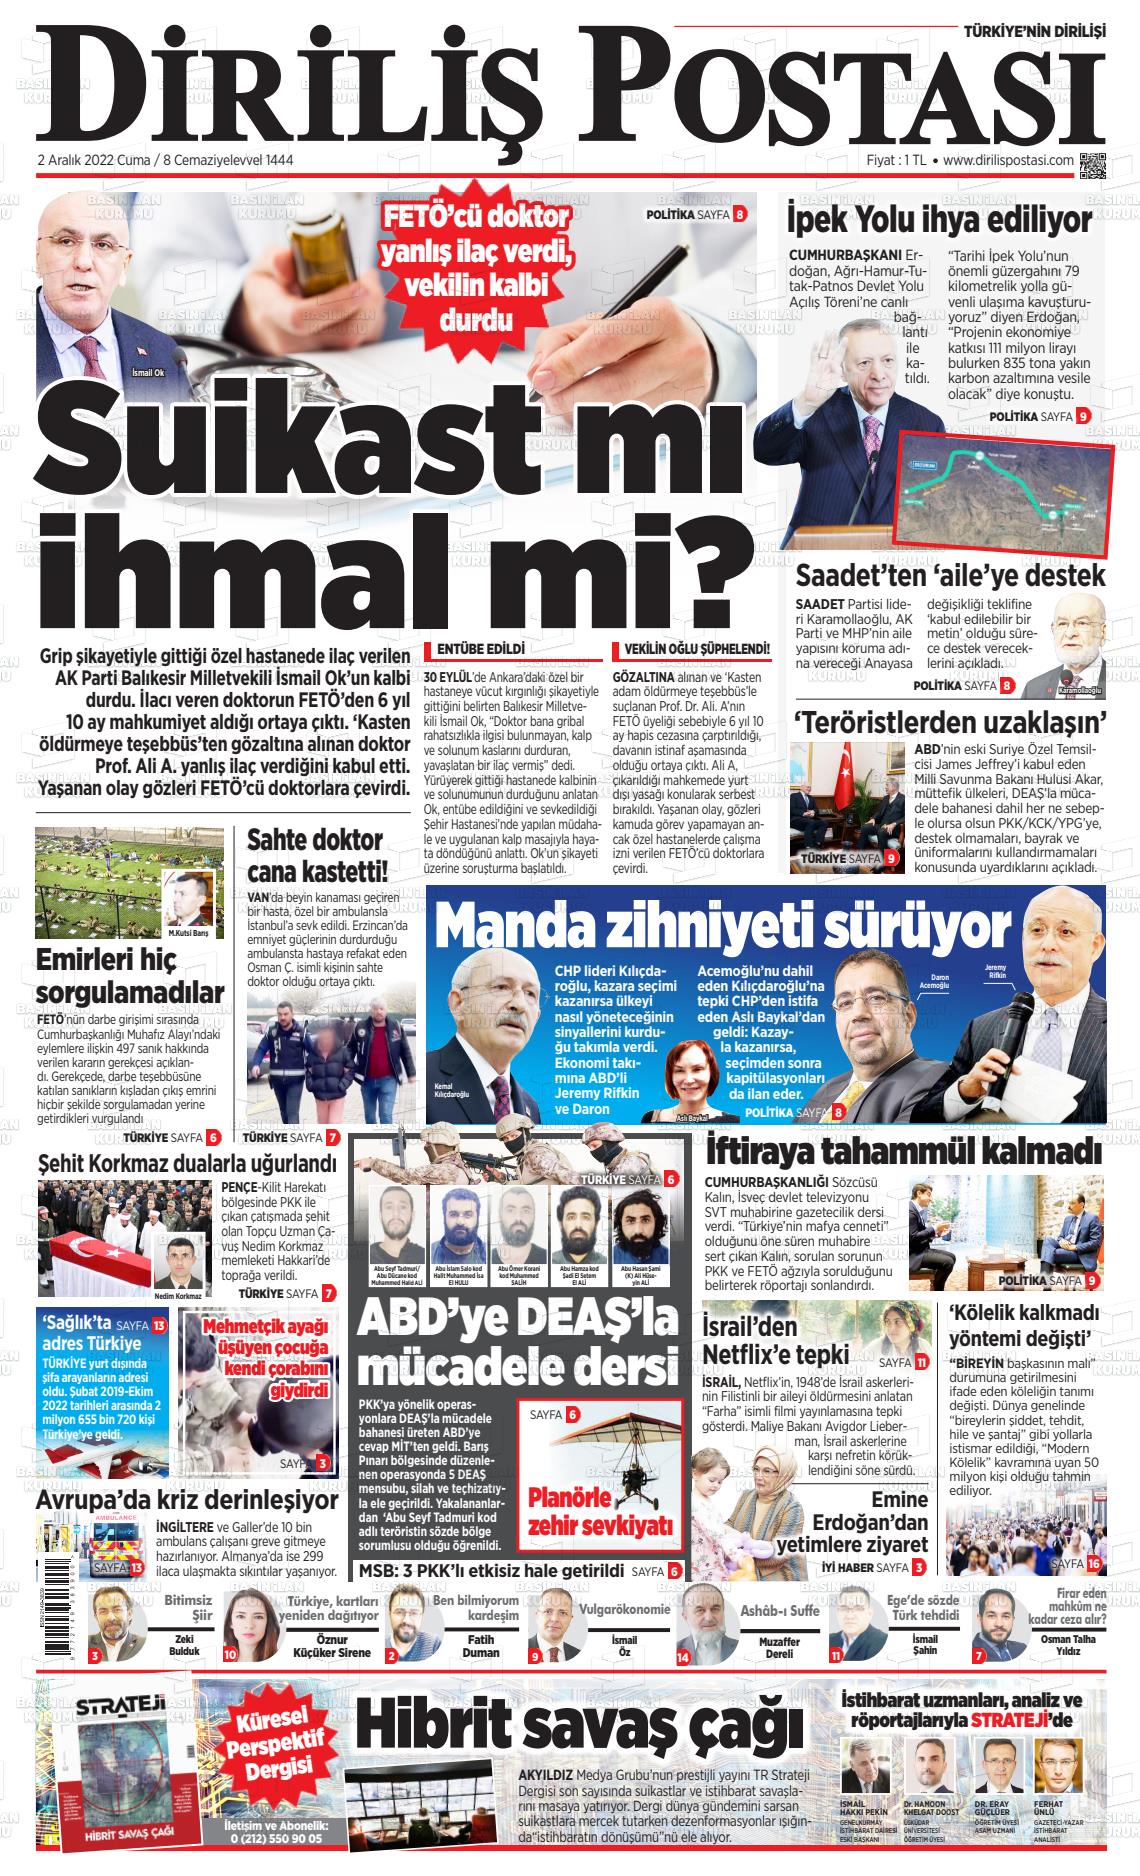 02 Aralık 2022 Diriliş Postası Gazete Manşeti